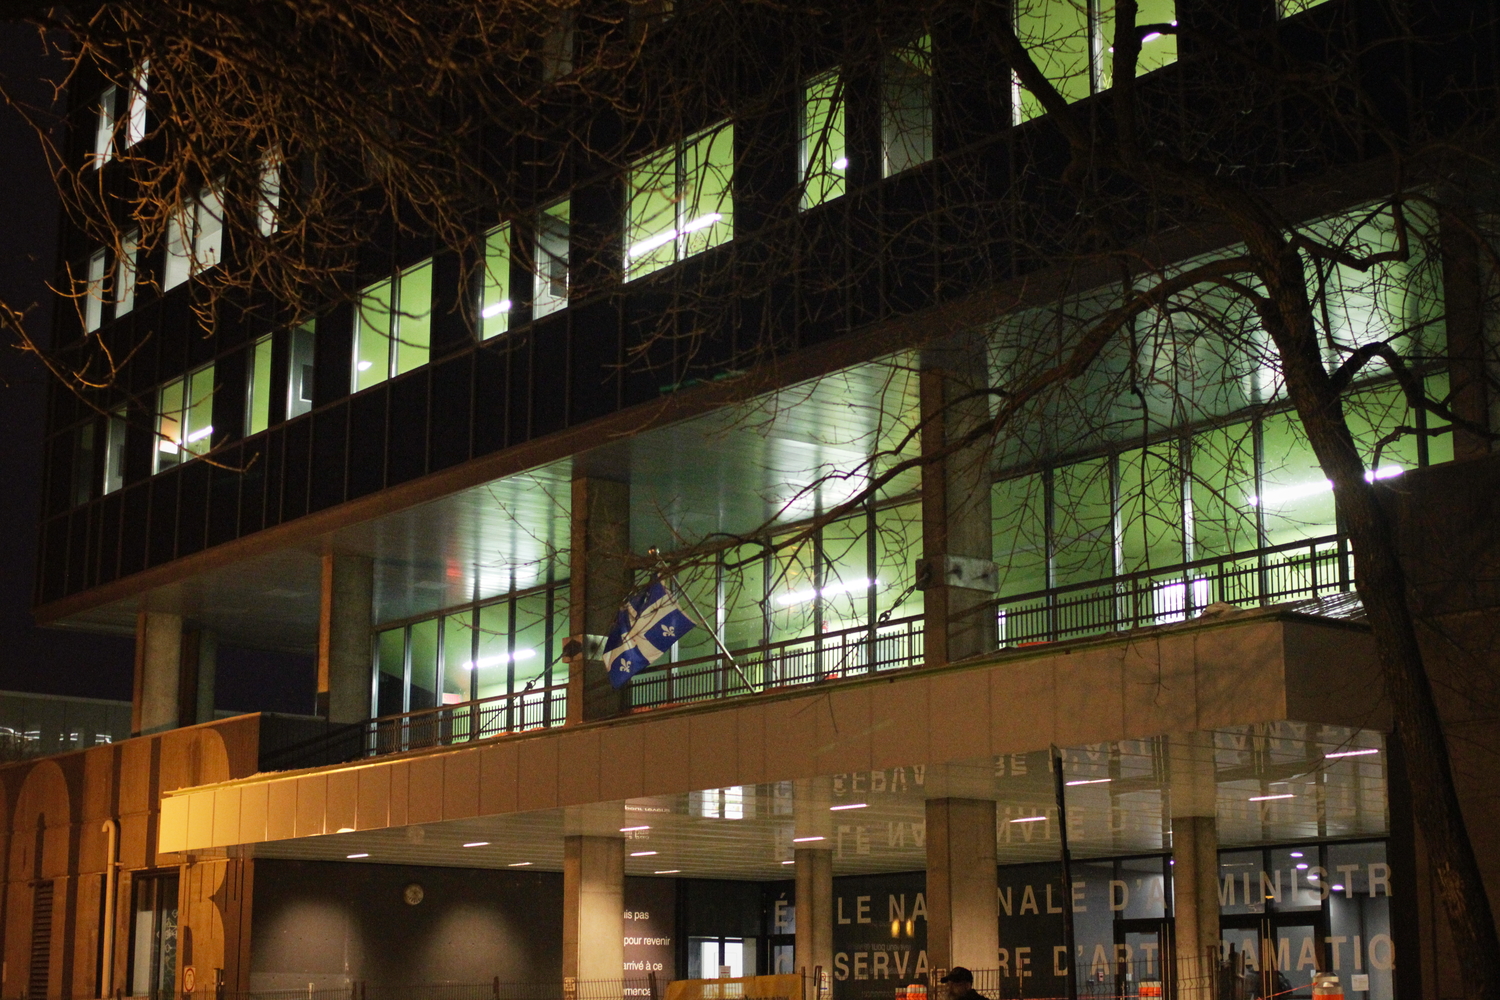 Extérieur du bâtiment qui accueille l’ENAP et les conservatoires de musique et d’art dramatique.